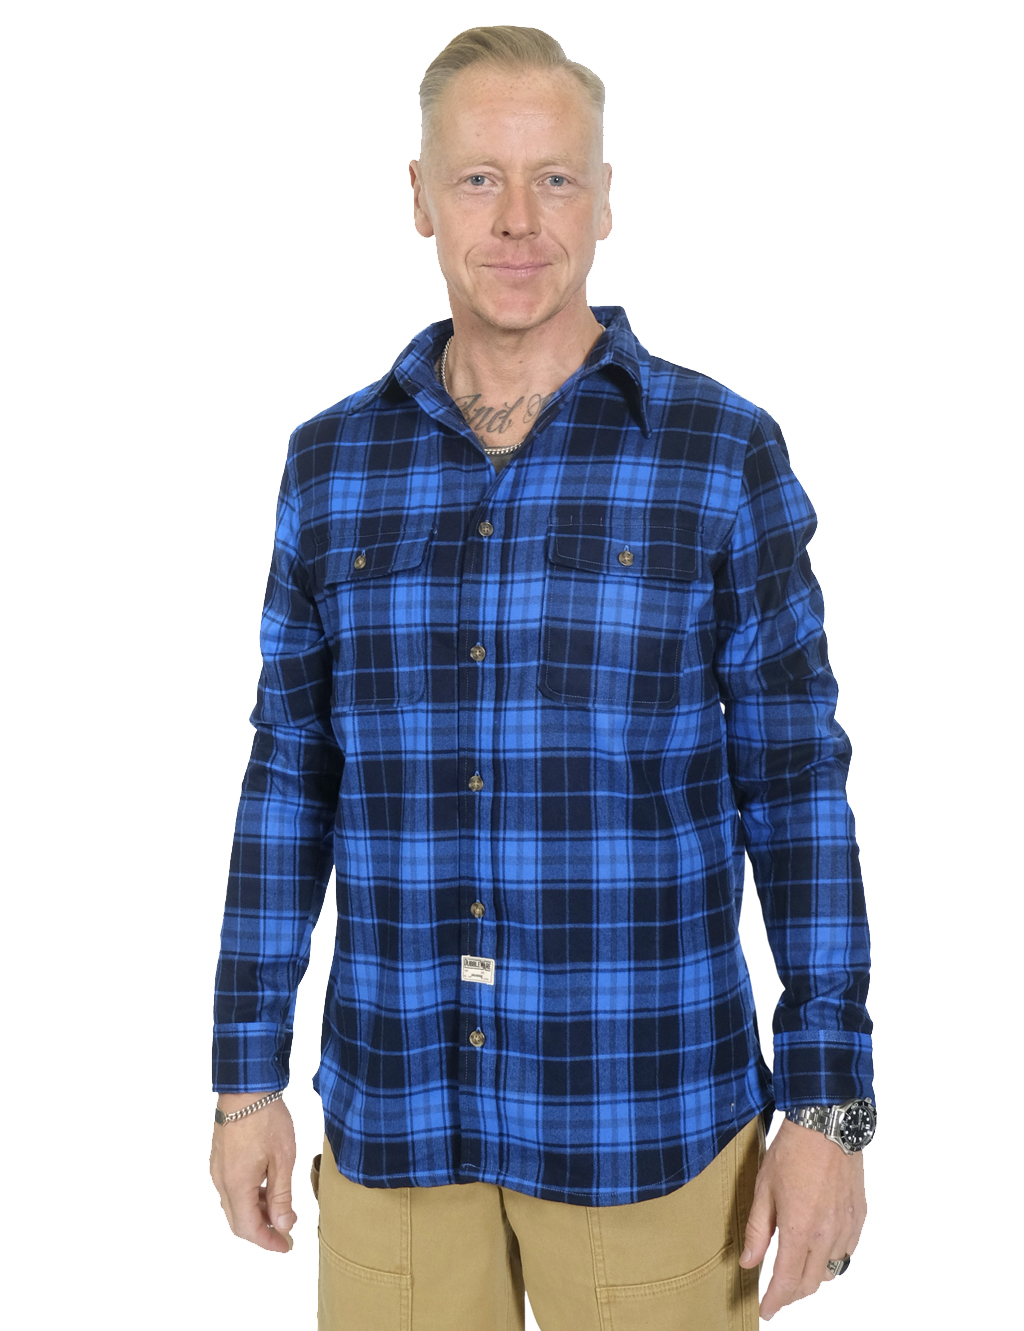 Dubbleware - Milton Plaid Shirt - Blue/Navy